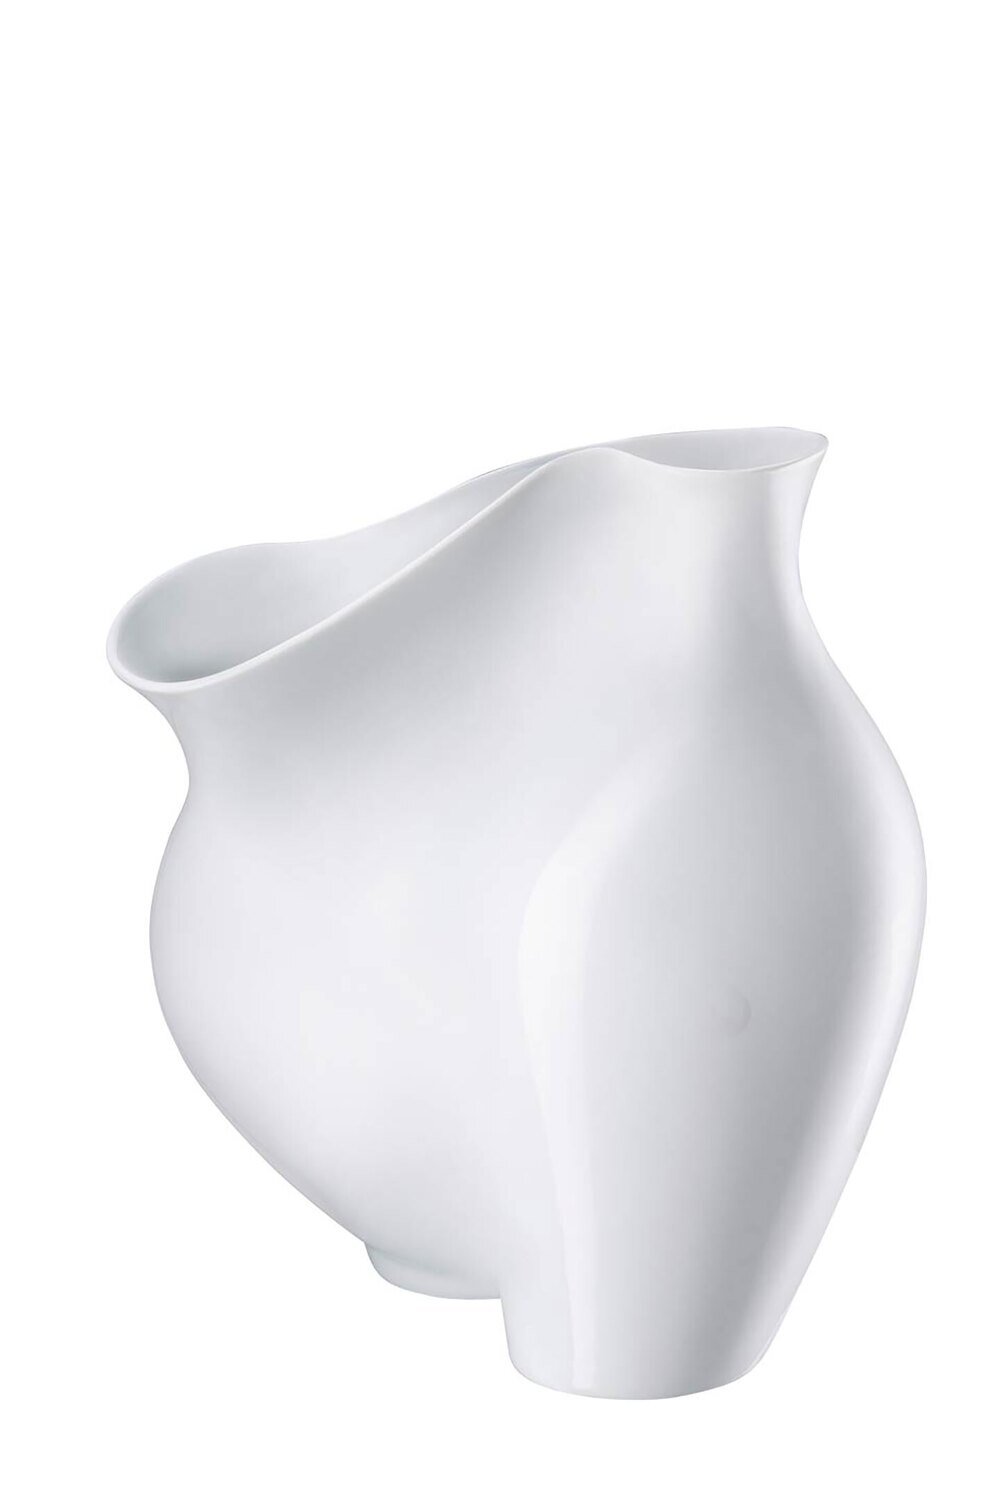 Rosenthal La Chute - White Vase 10 1/4 Inch